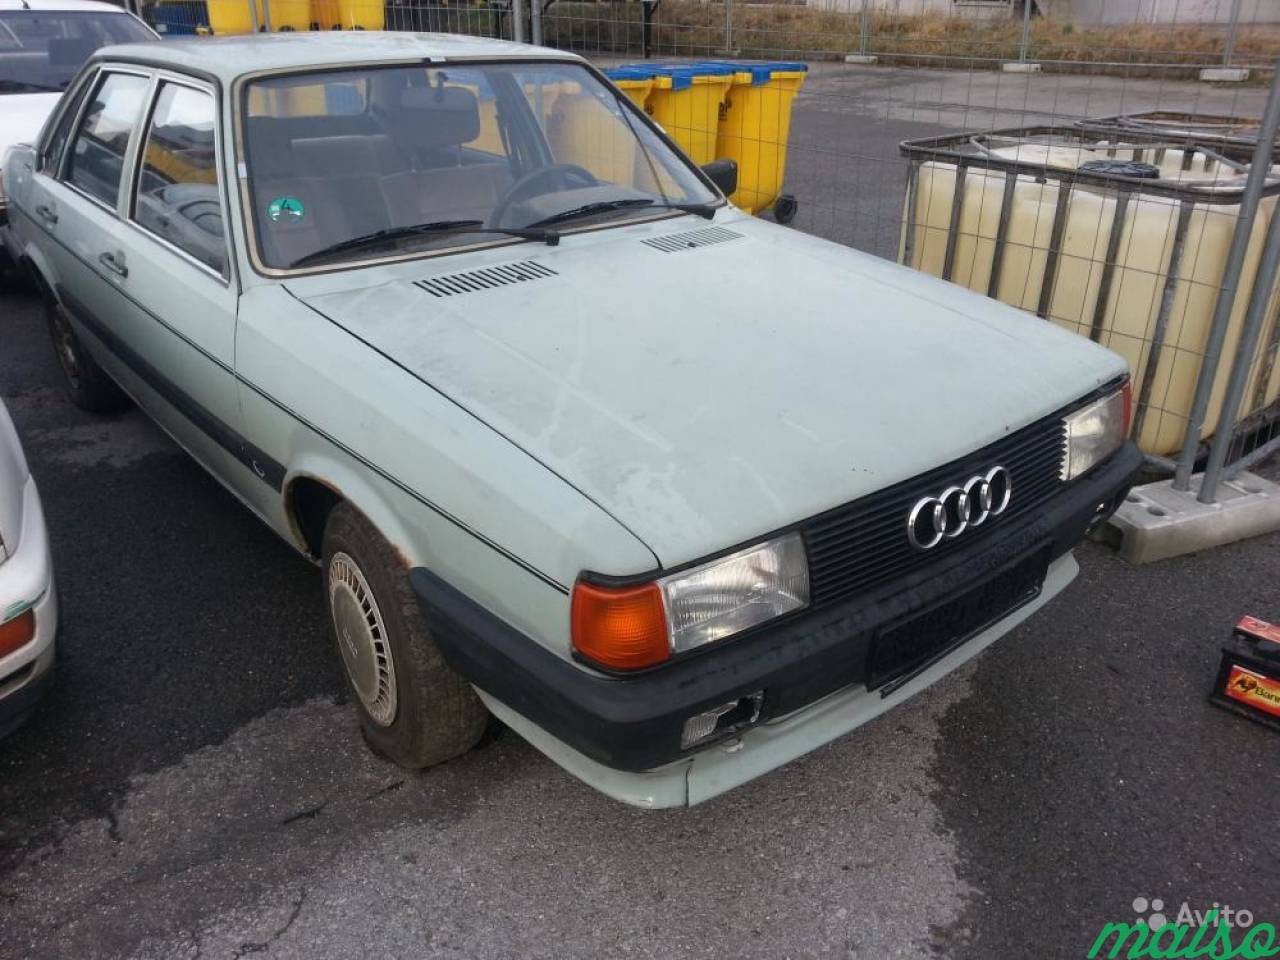 Запчасти на Audi 80 (B2) -1986 в Санкт-Петербурге. Фото 2